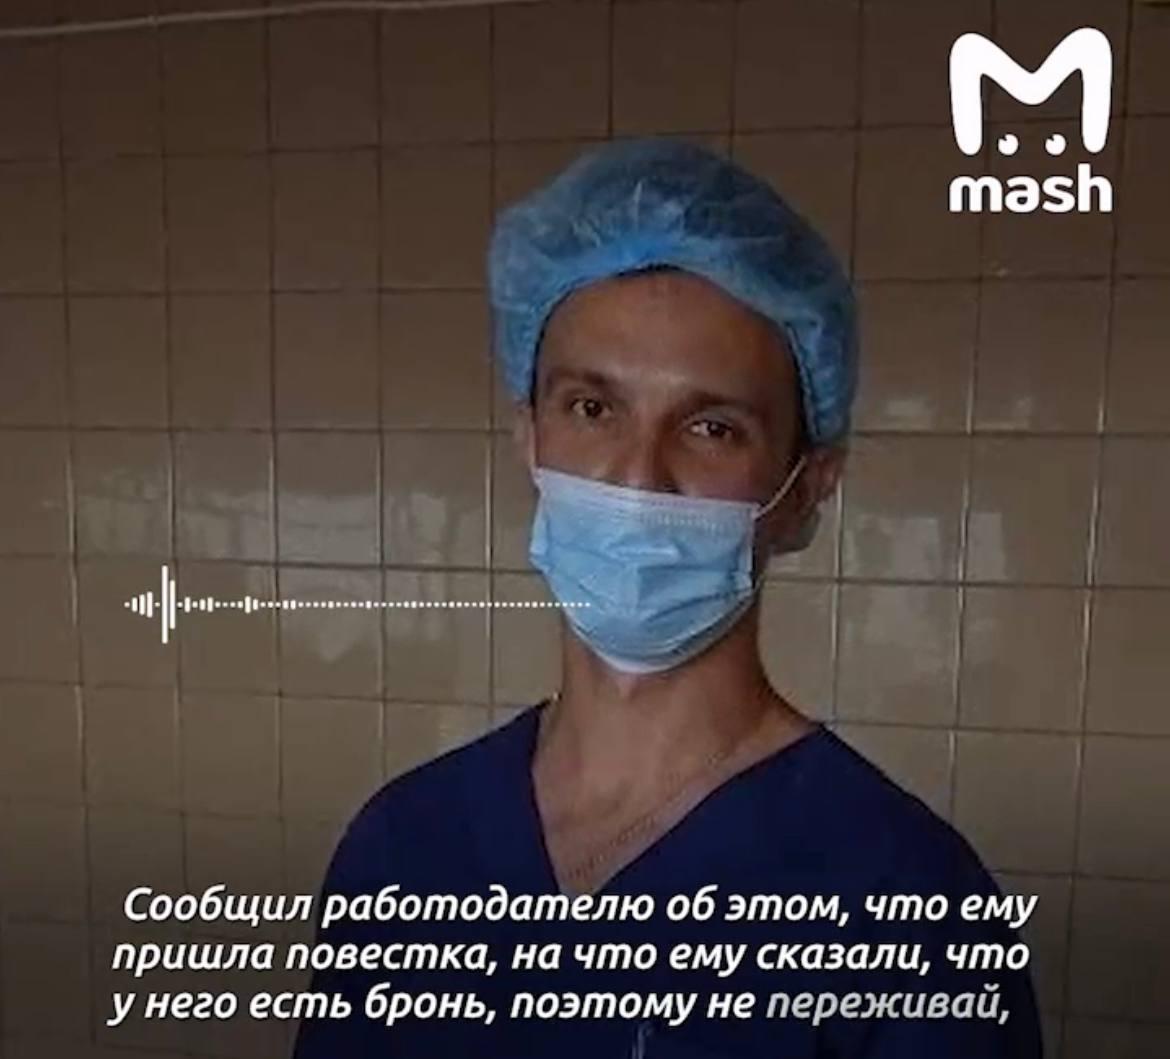 «Этим можно сходить в туалет»: врача из Подмосковья призвали на службу стрелком, несмотря на бронь от медучреждения